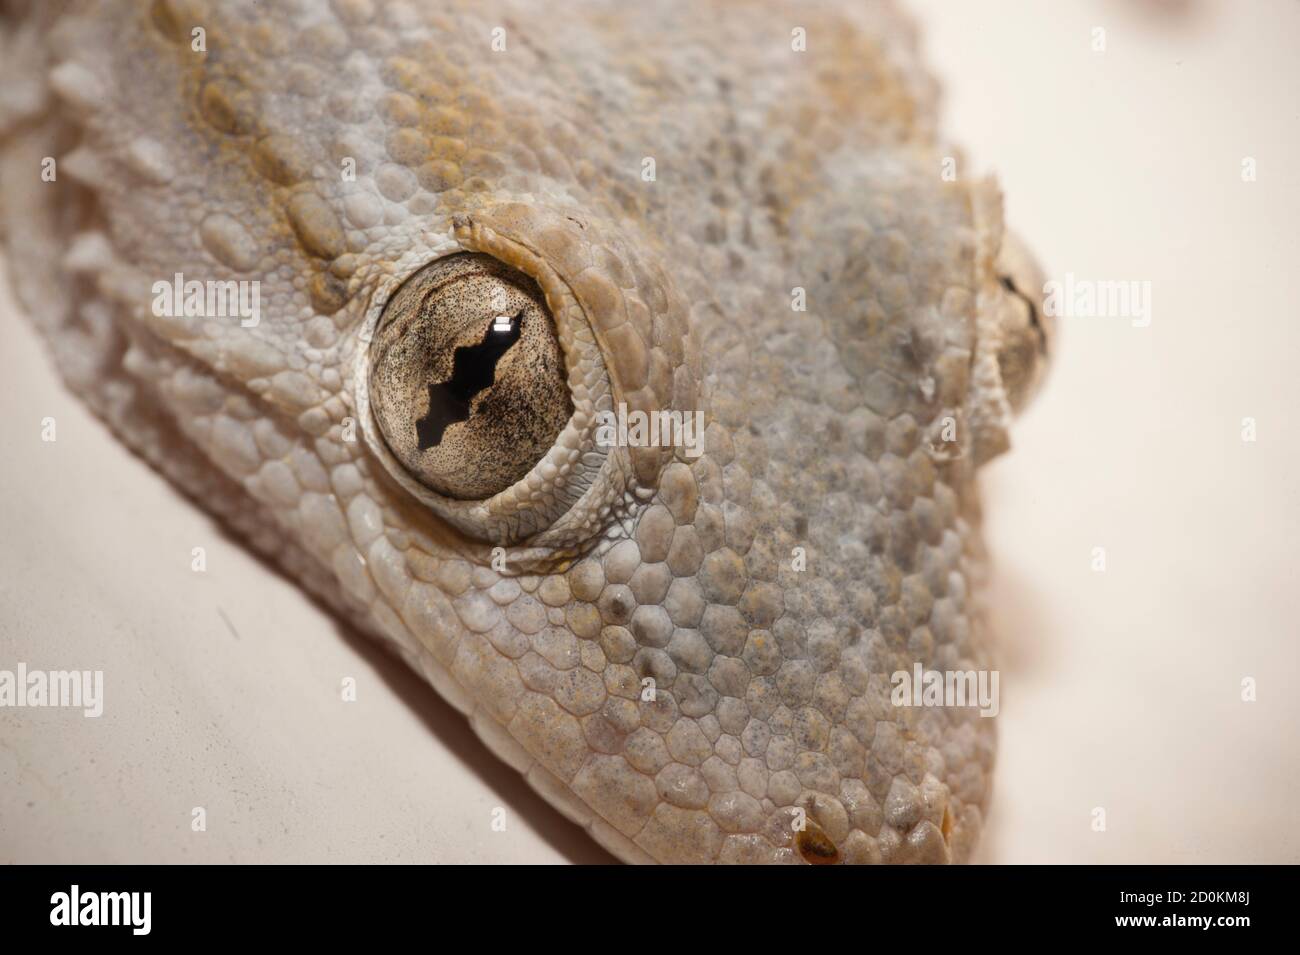 Maison grise Gecko vivant à l'intérieur d'une maison européenne Banque D'Images